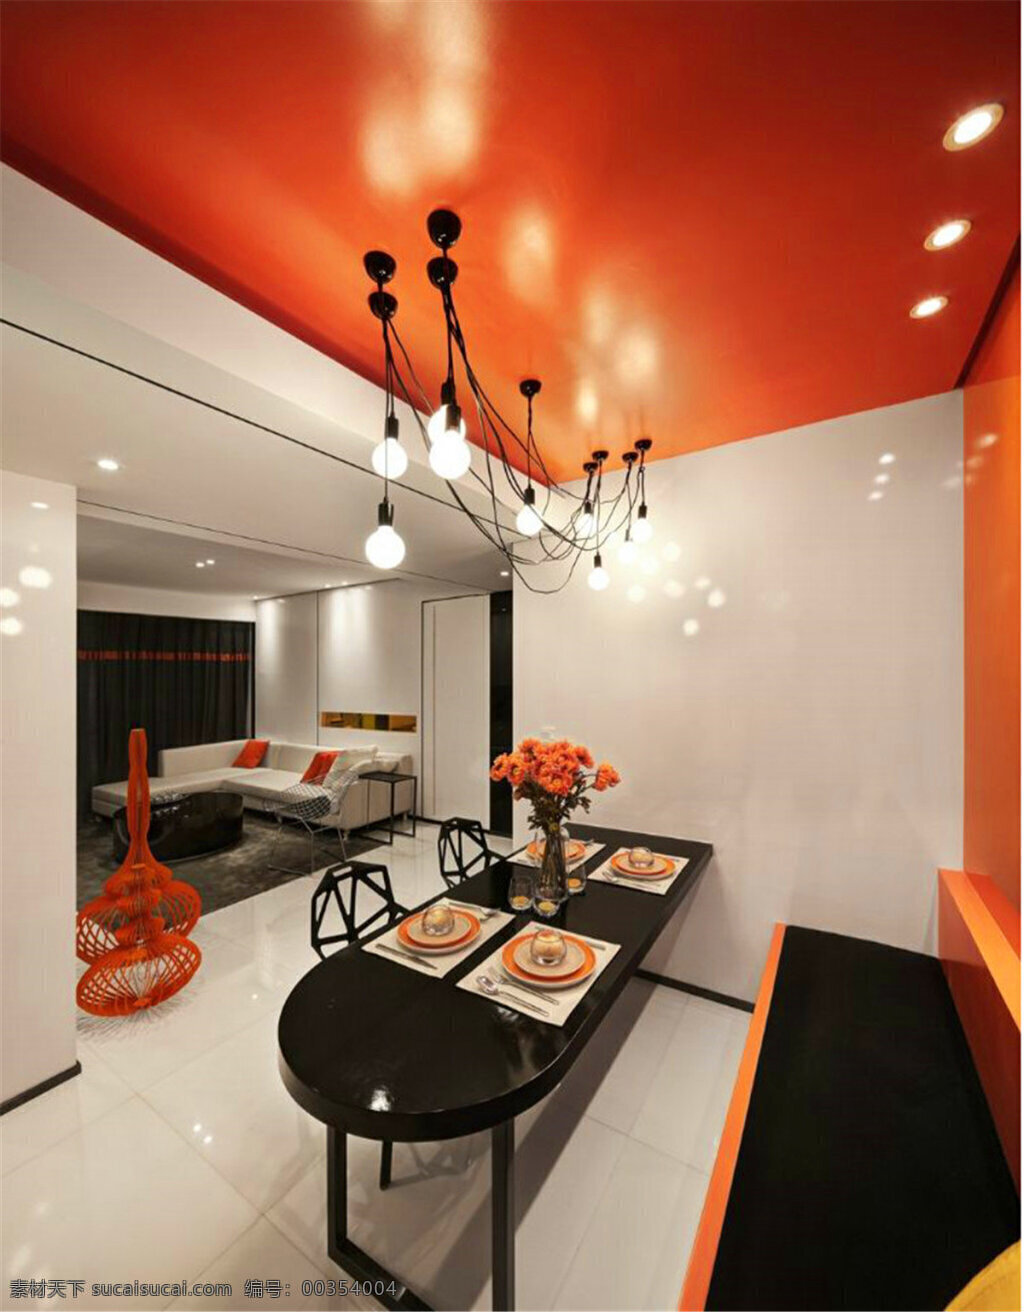 简约 餐厅 橙黄色 墙壁 装修 室内 效果图 白色灯光 长方形餐桌 个性吊灯 浅色地板砖